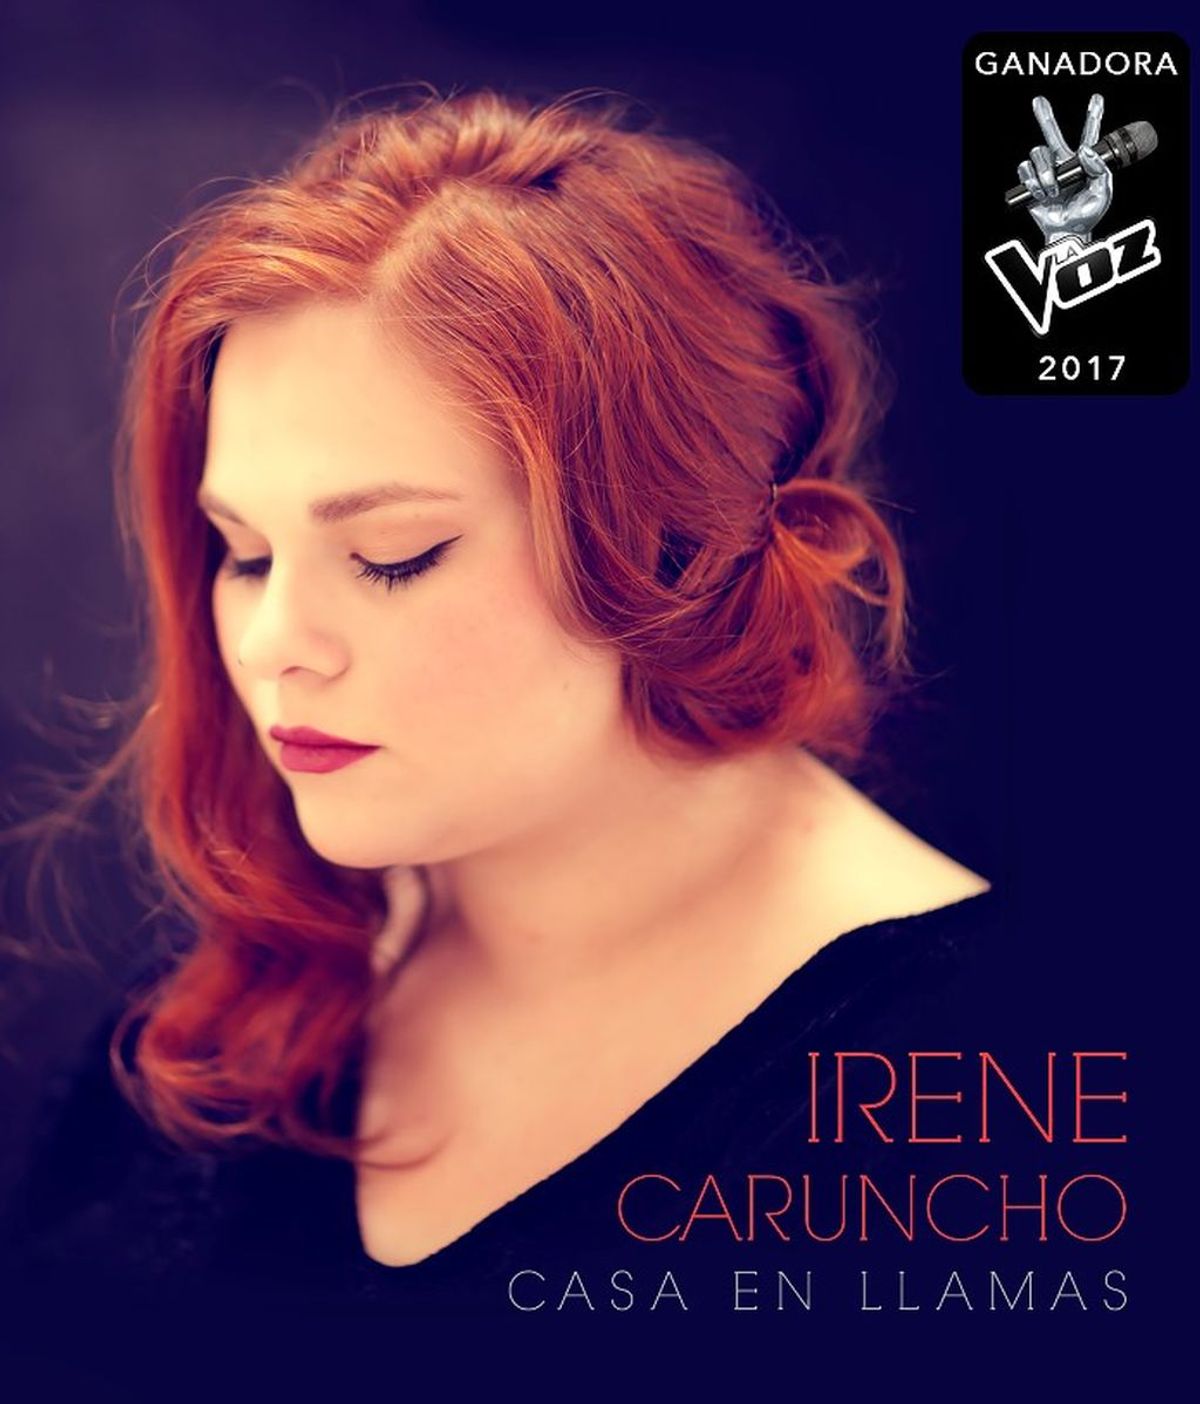 ¡Estreno en primicia en Mediaset del primer videoclip de Irene Caruncho "Otra vez"!